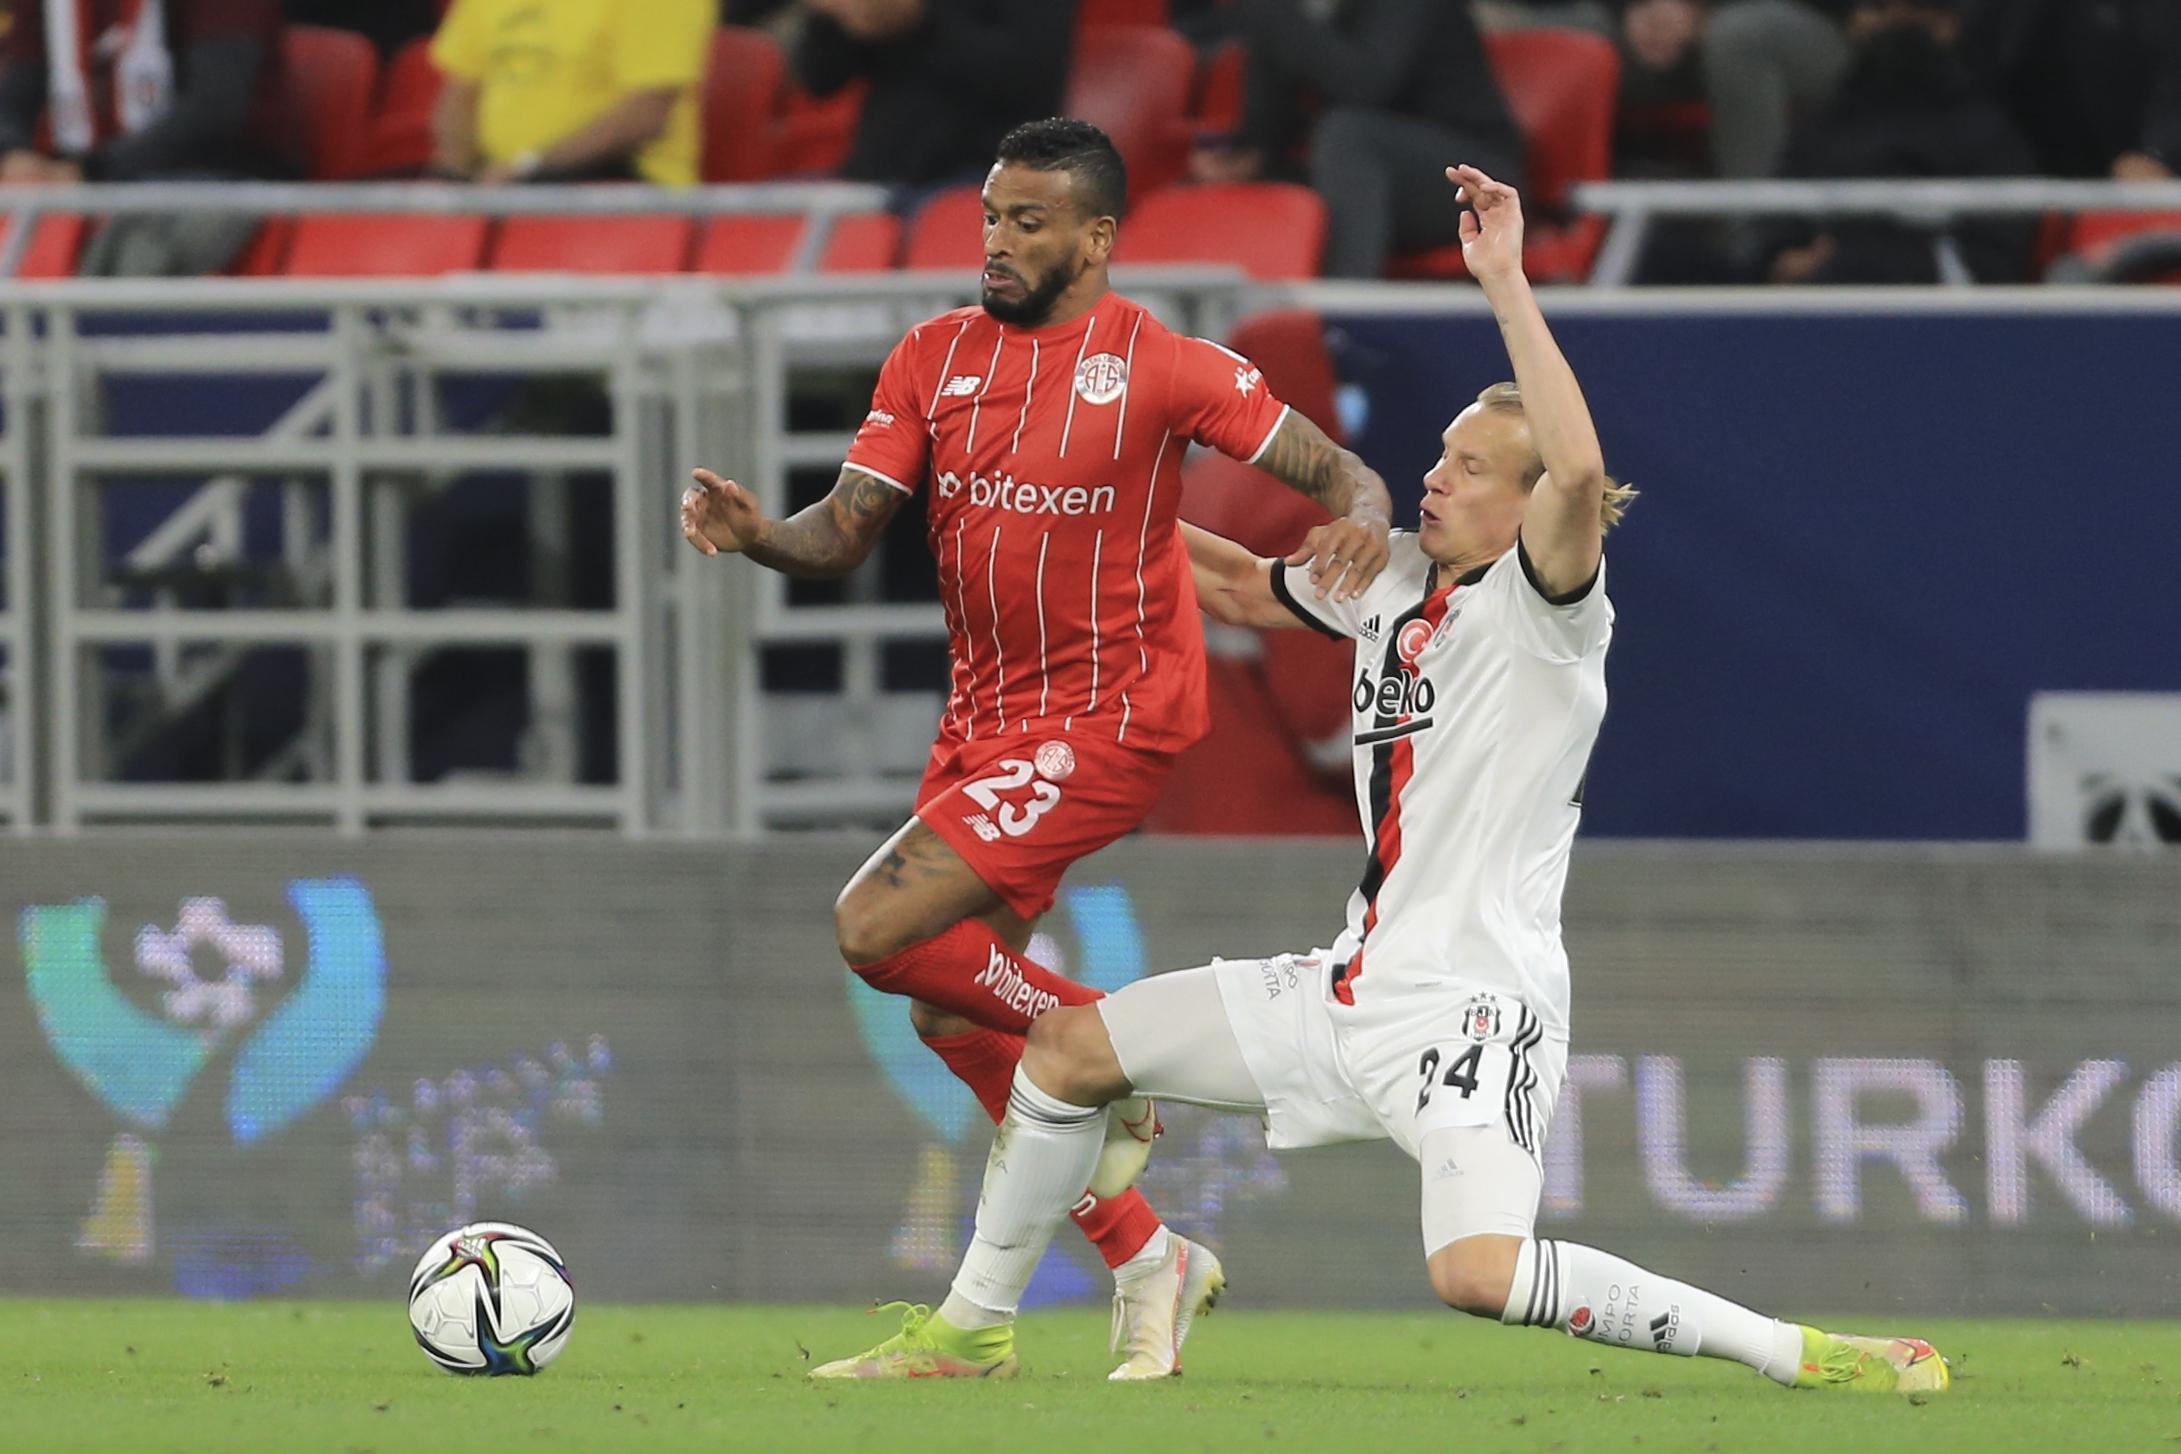 Süper Kupa Beşiktaşın (ÖZET) Beşiktaş - Antalyaspor Süper Kupa maç sonucu: 1-1 (Penaltılar: 4-2)